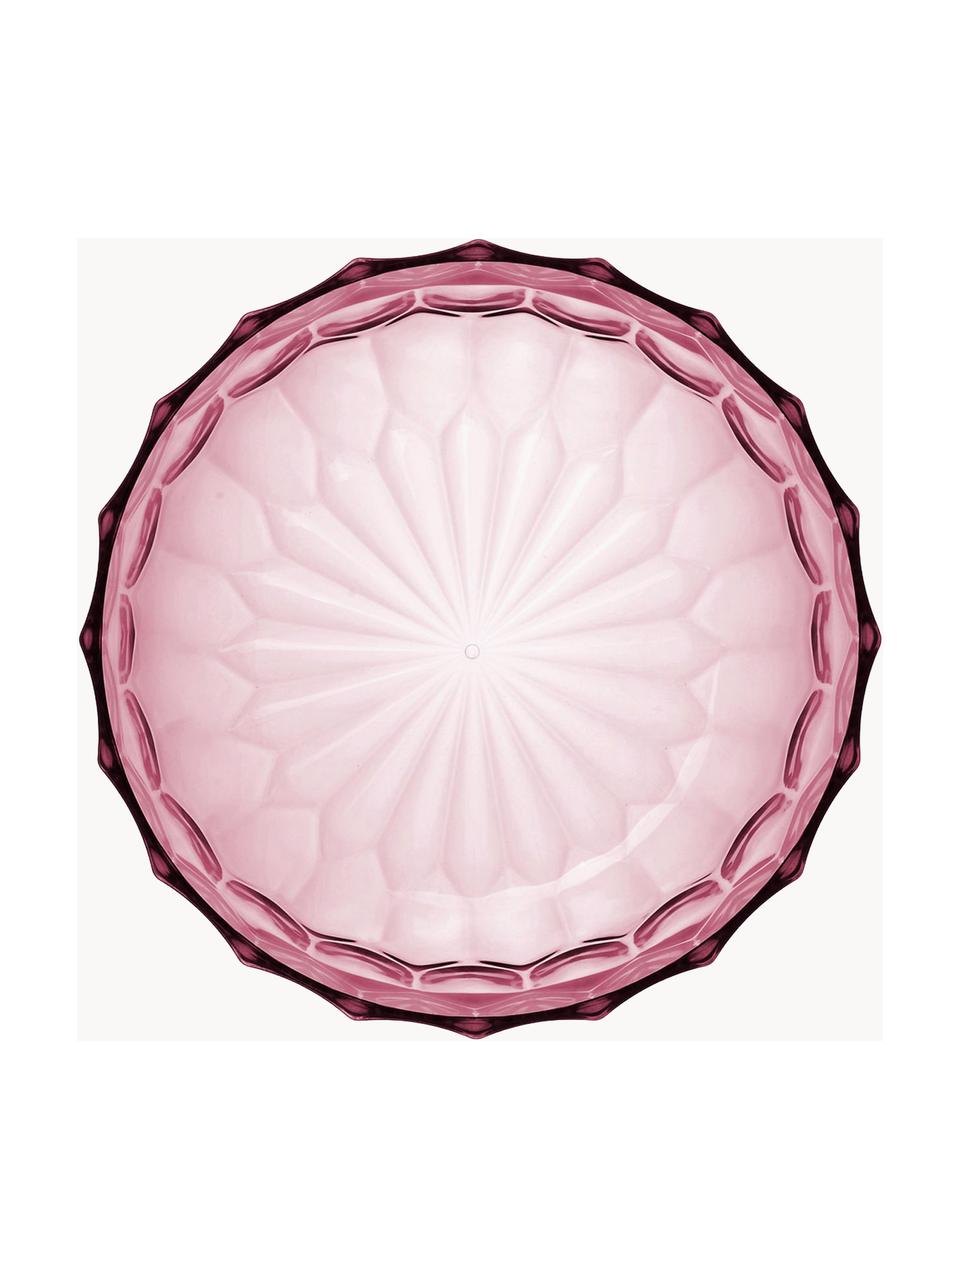 Ensaladera con relieves Jellies, Plástico, Rosa, Ø 32 x Al 14 cm